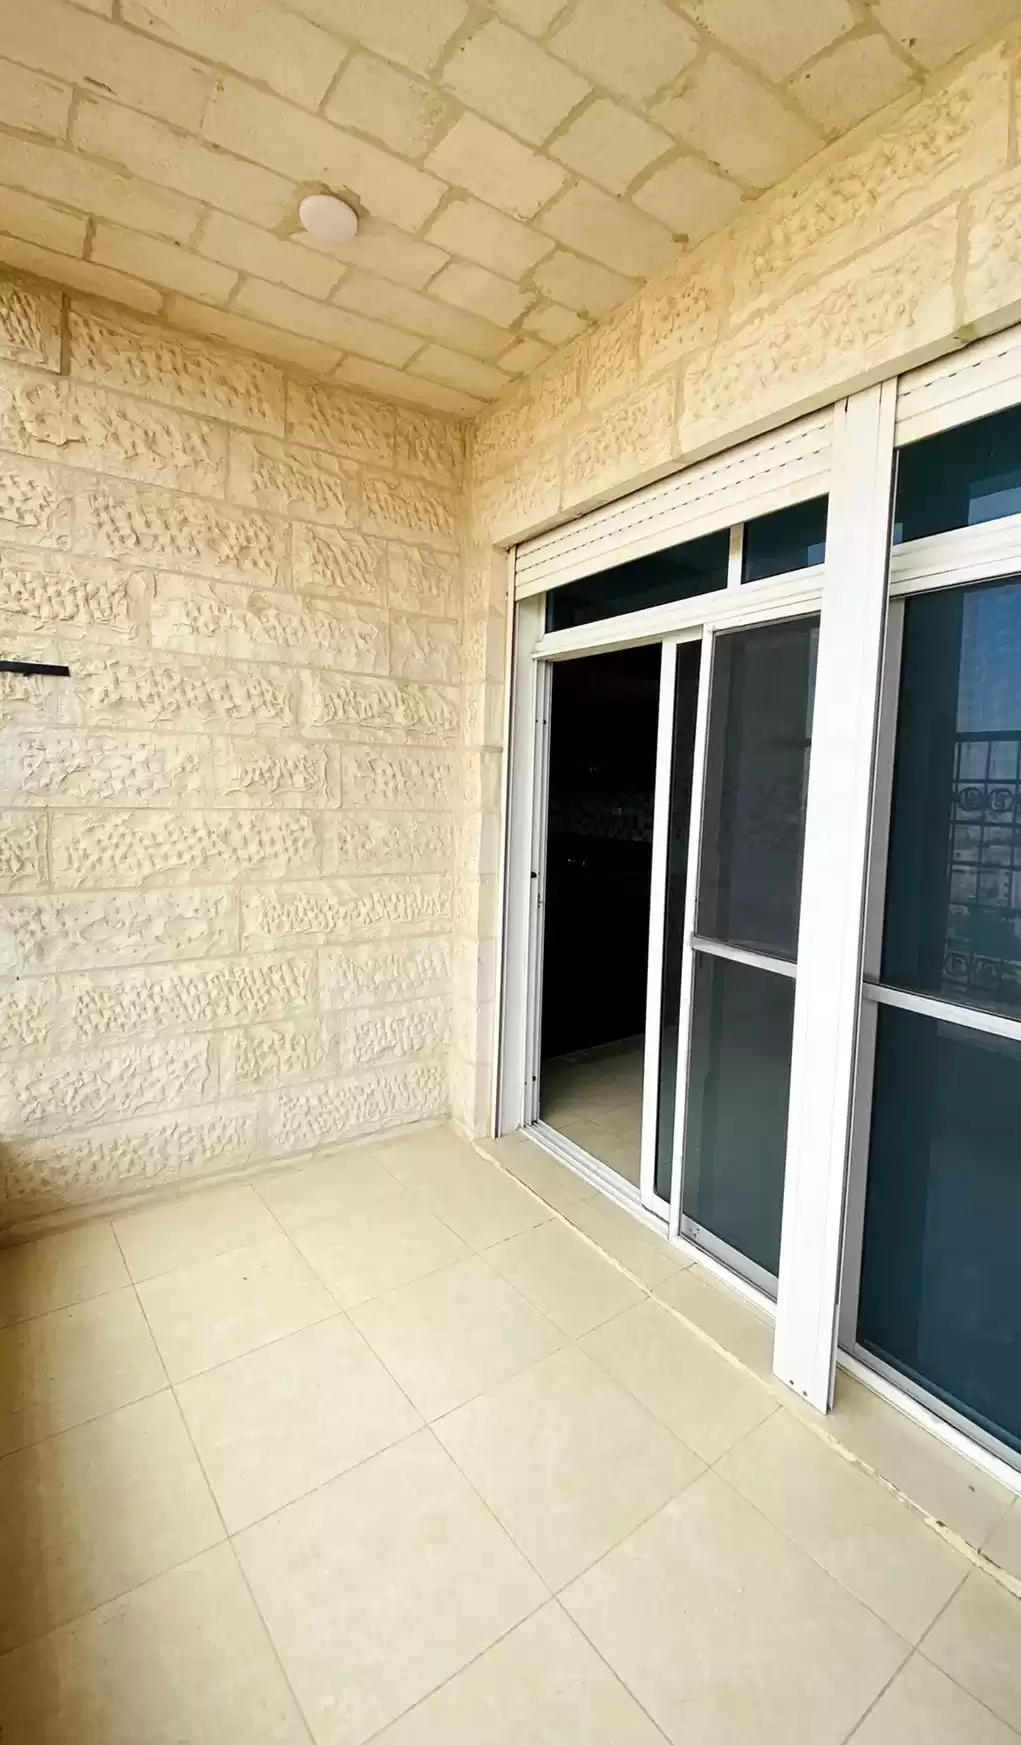 سكني عقار جاهز 2 غرف  غير مفروش شقة  للبيع في عمان #26699 - 1  صورة 